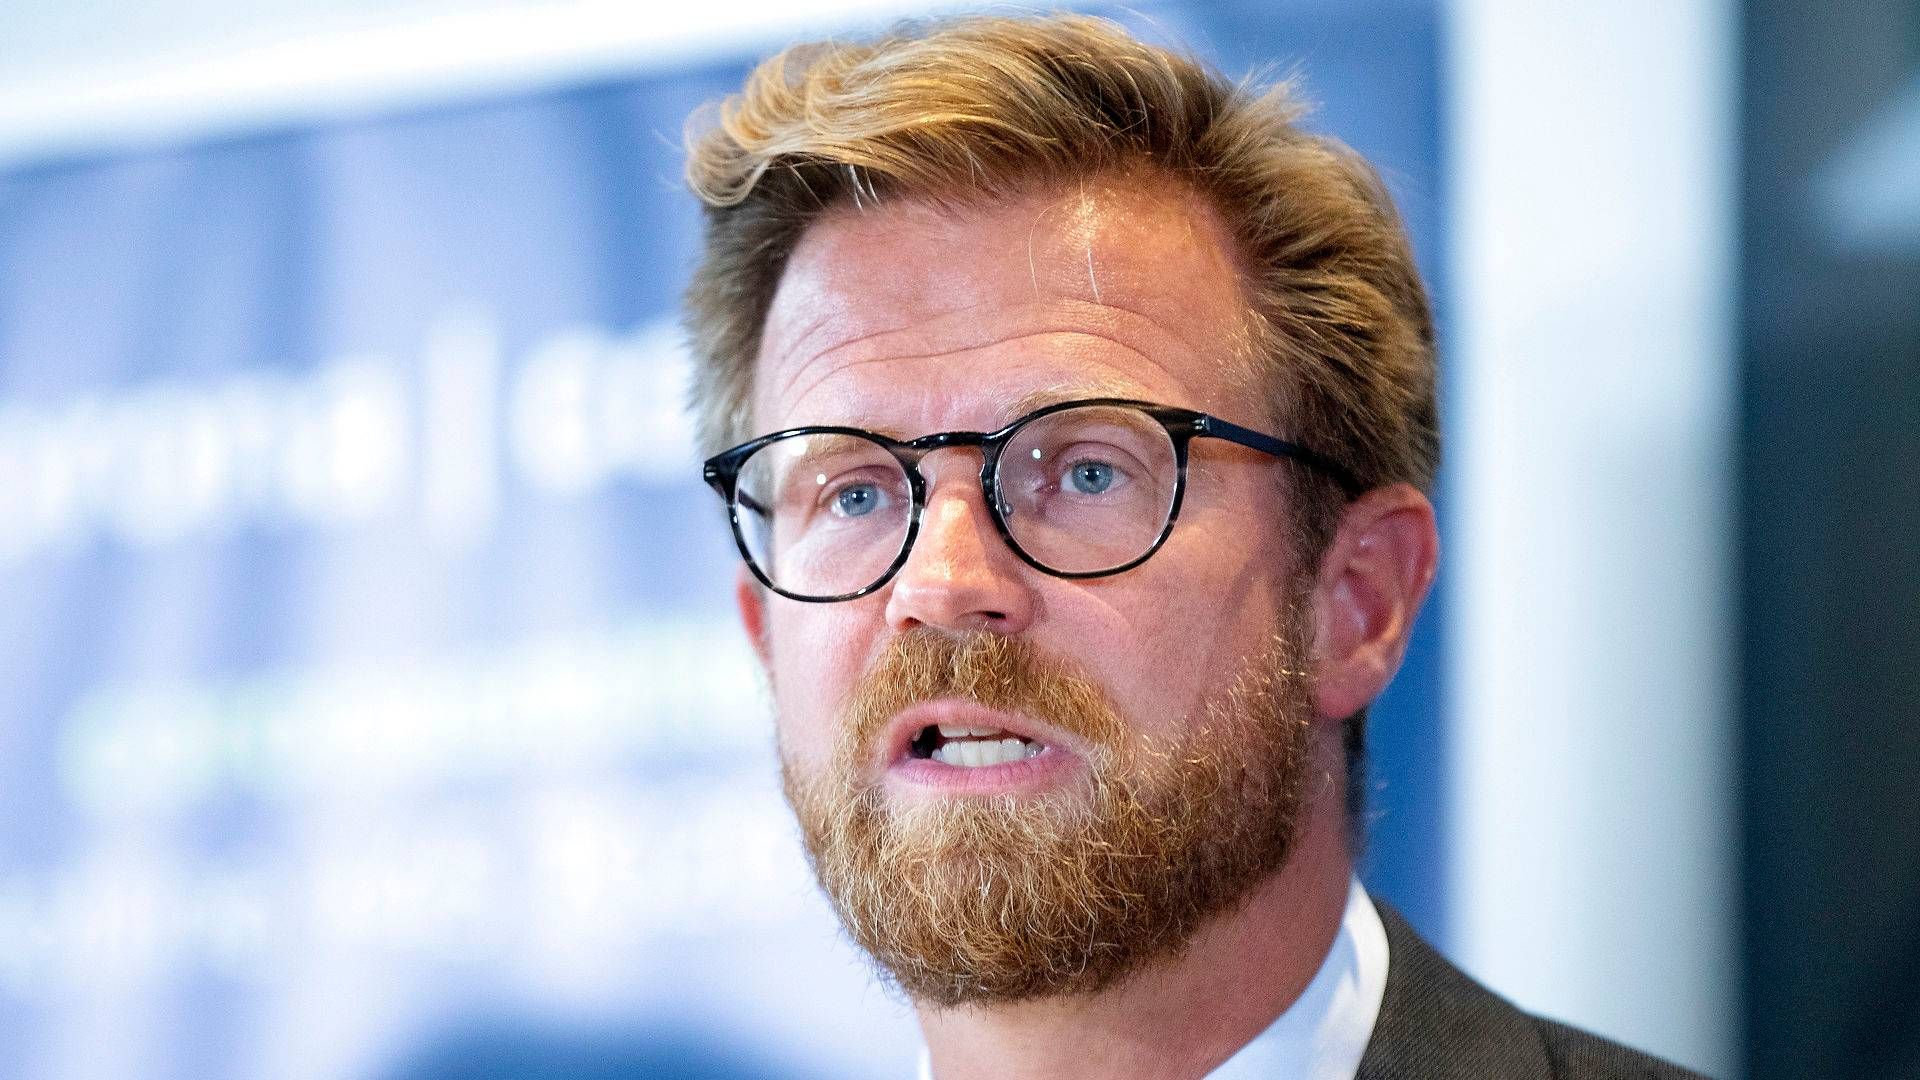 Transportminister Benny Engelbrecht (S) vil nu holde møder med Enhedslisten, Radikale Venstre og SF. | Foto: Finn Frandsen/Ritzau Scanpix